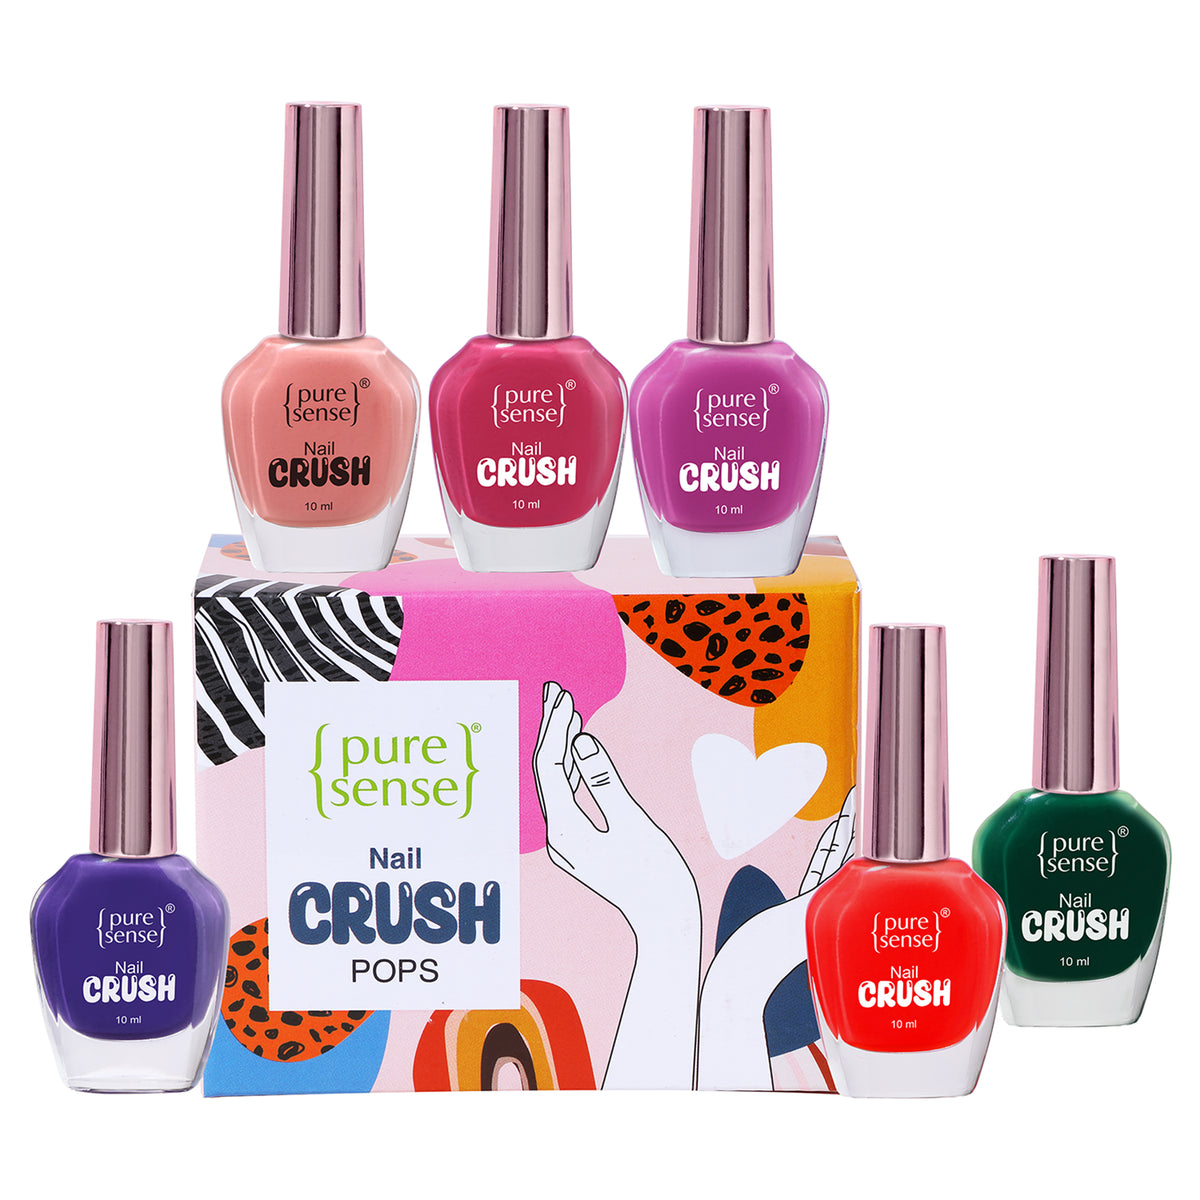 Nail Crush Pops | Nail Enamel | Nail Polish | Nail Paint pack of 6